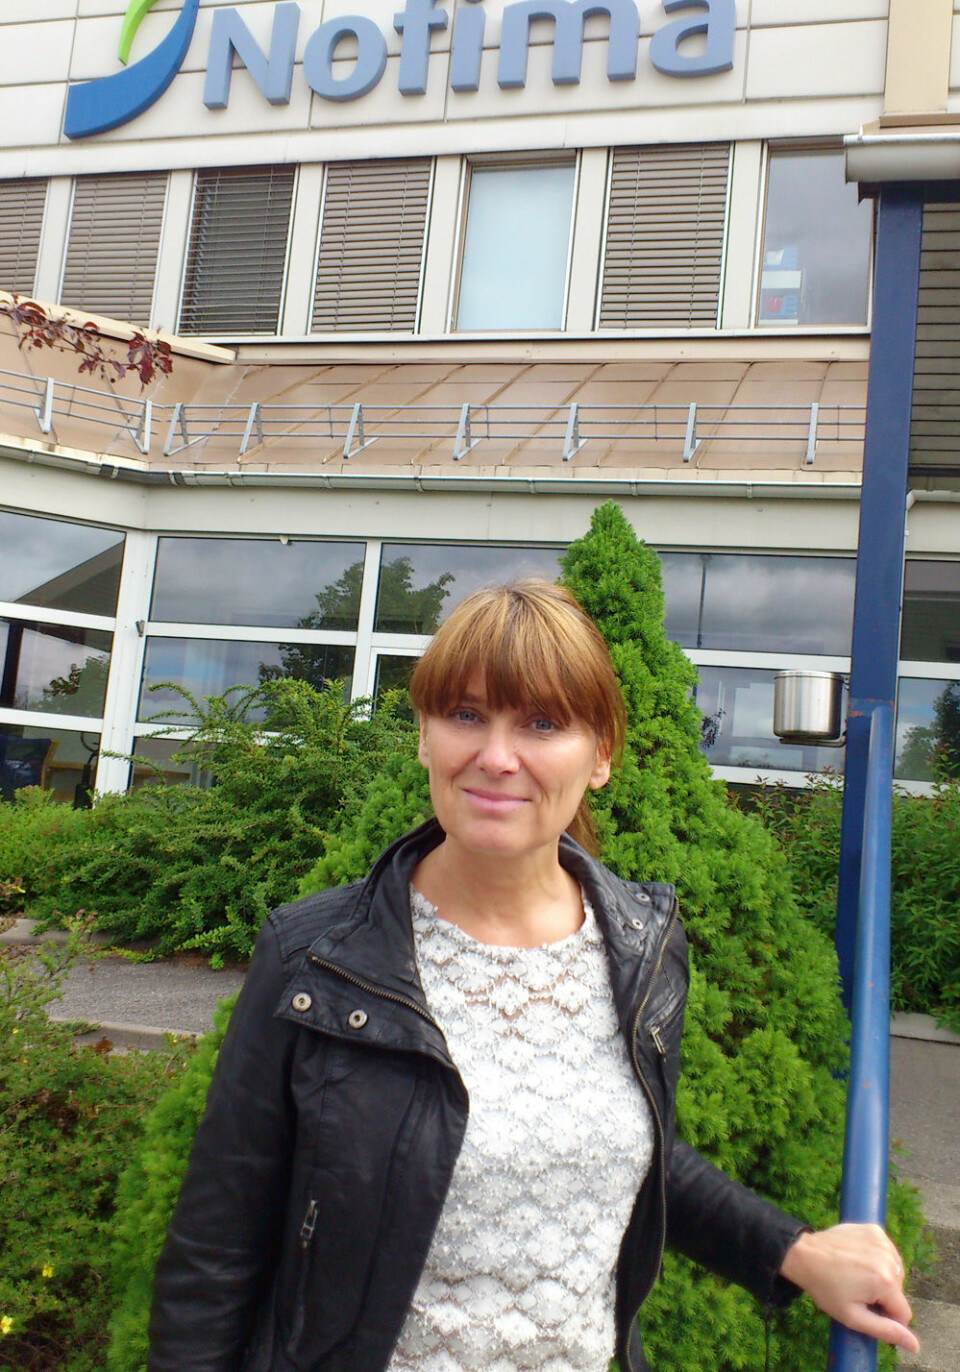 Seniorforsker Nina Veflen Olsen ved Nofima på Ås. (Foto: Andreas R. Graven)